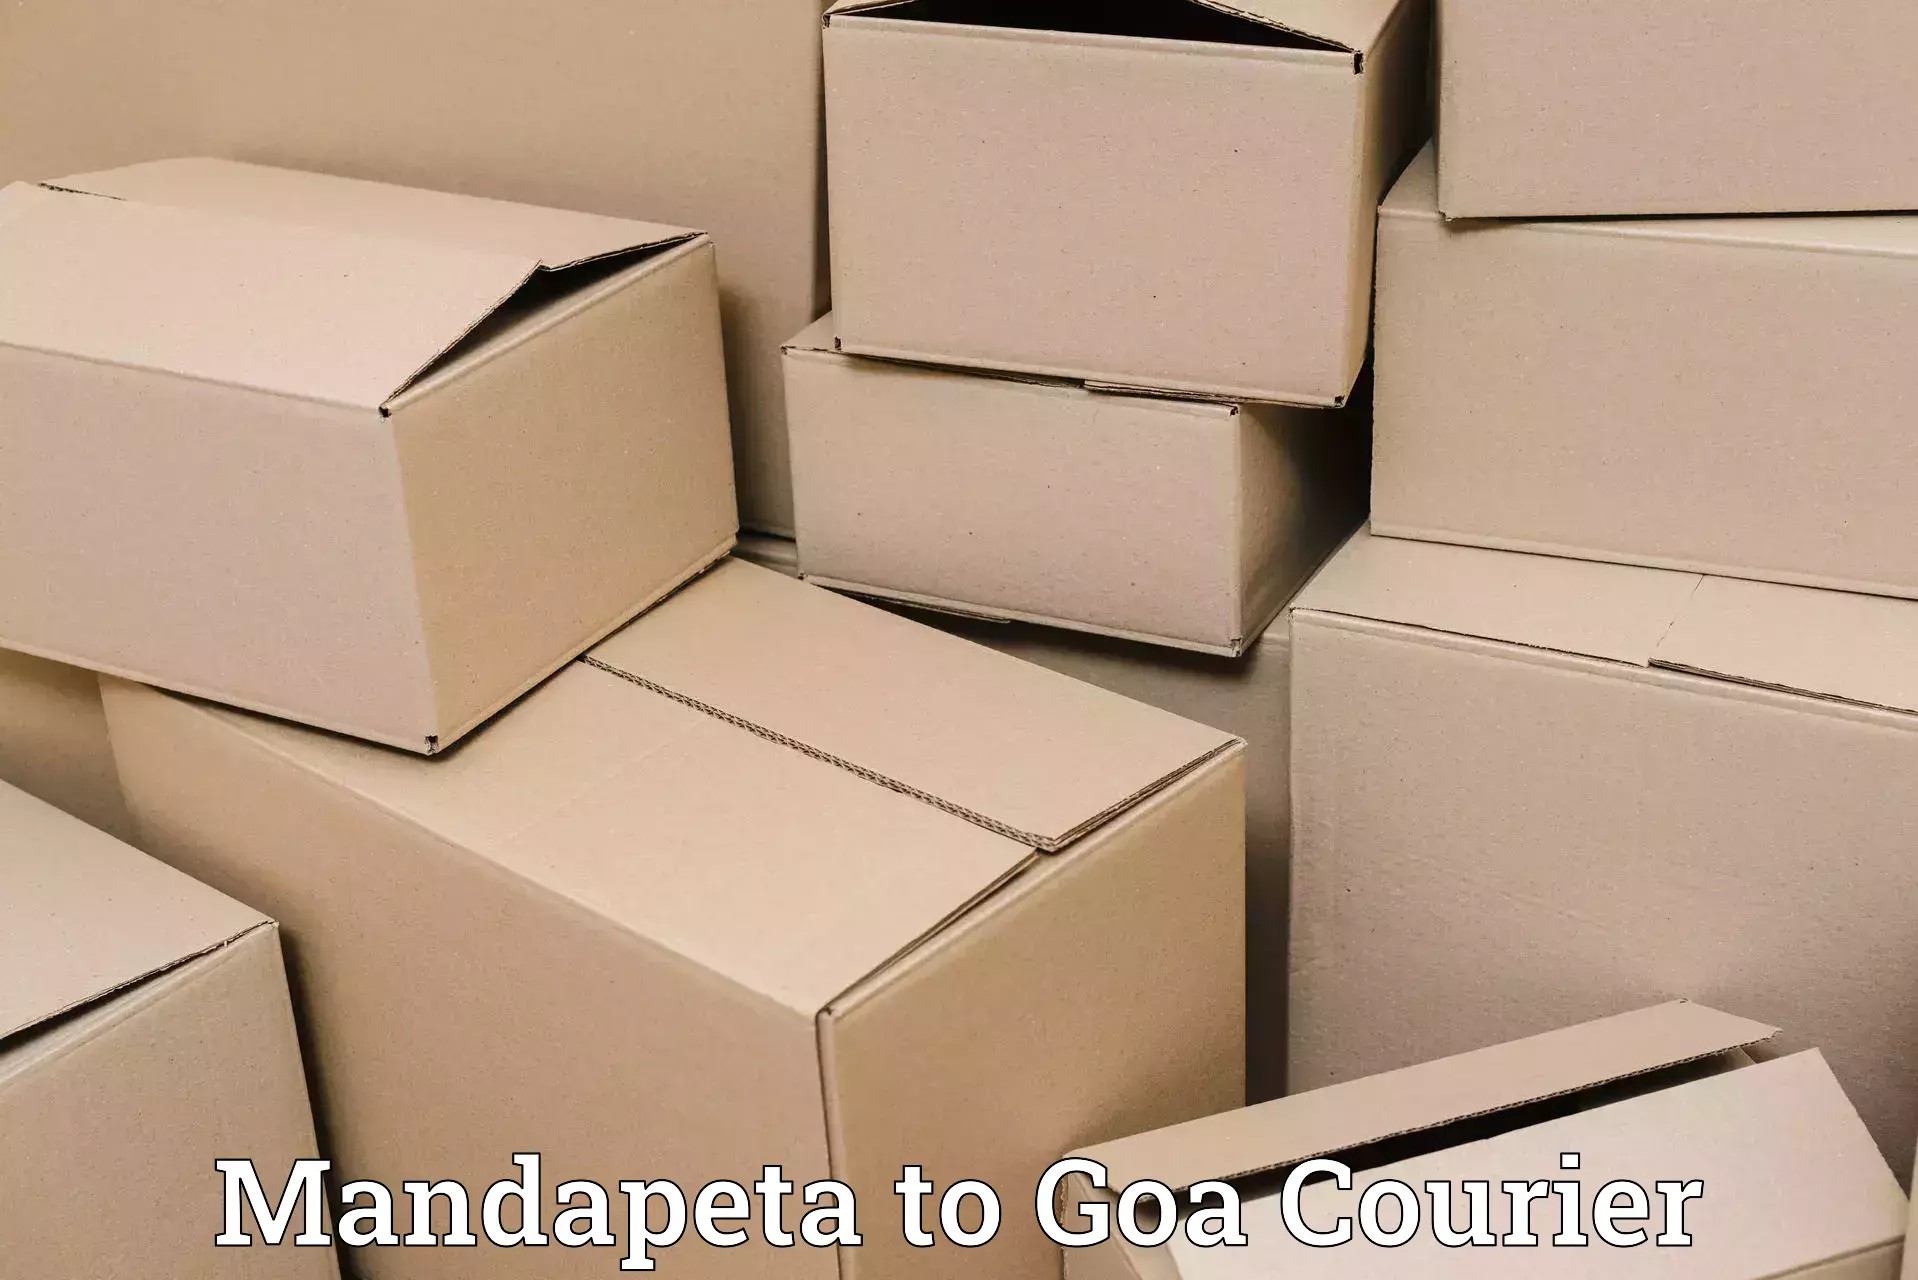 Express postal services Mandapeta to IIT Goa